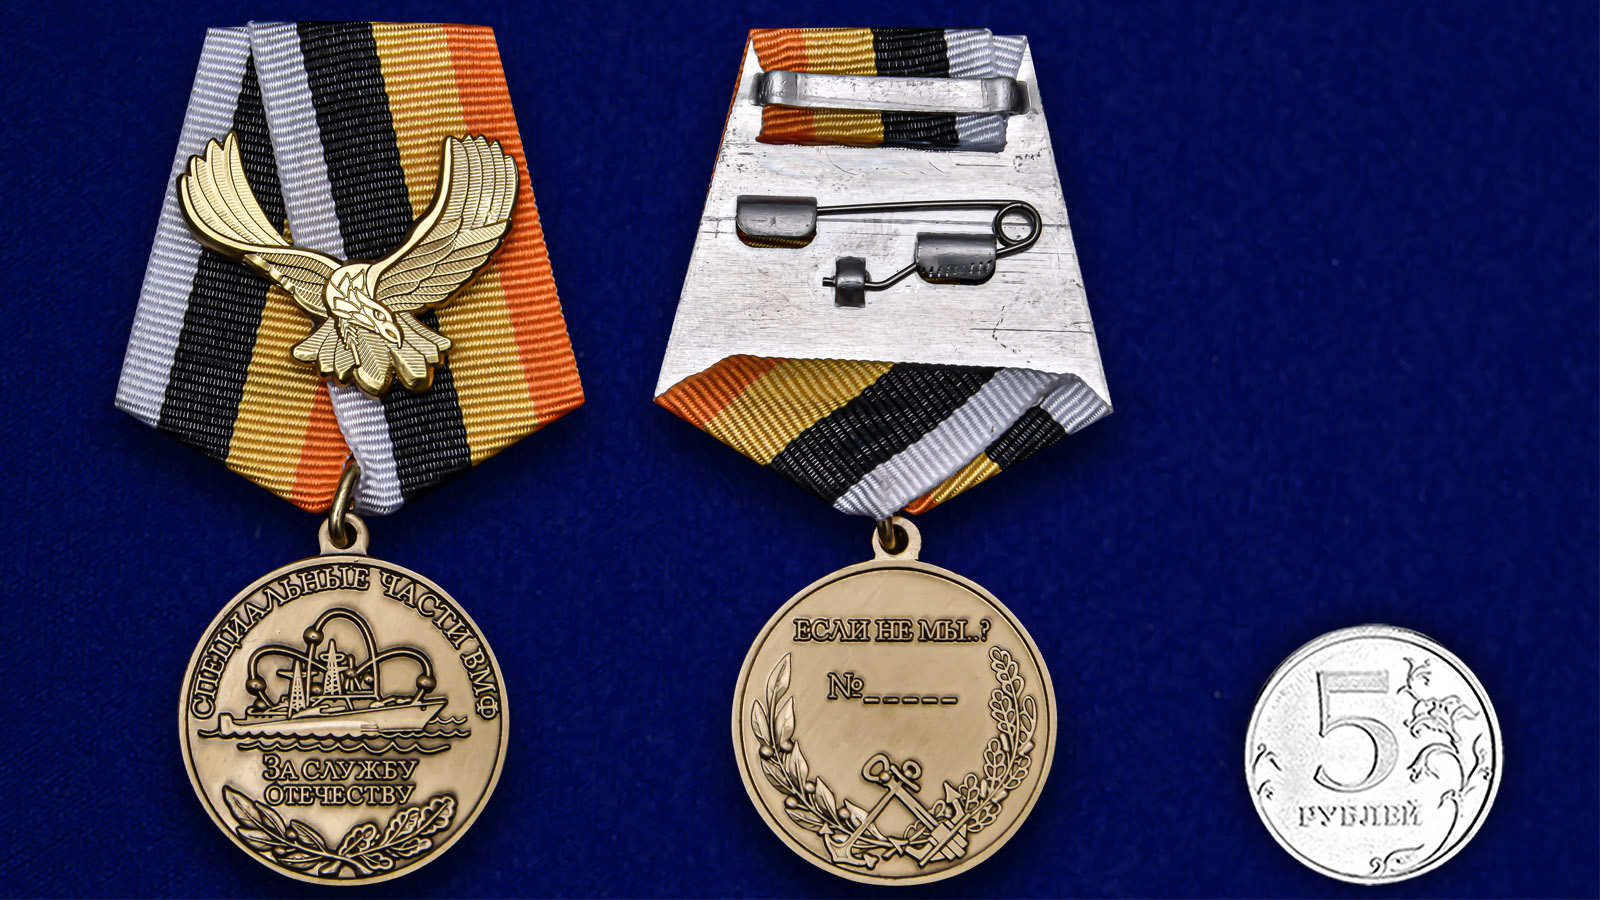 Латунная медаль "За службу Отечеству" Специальные части ВМФ 